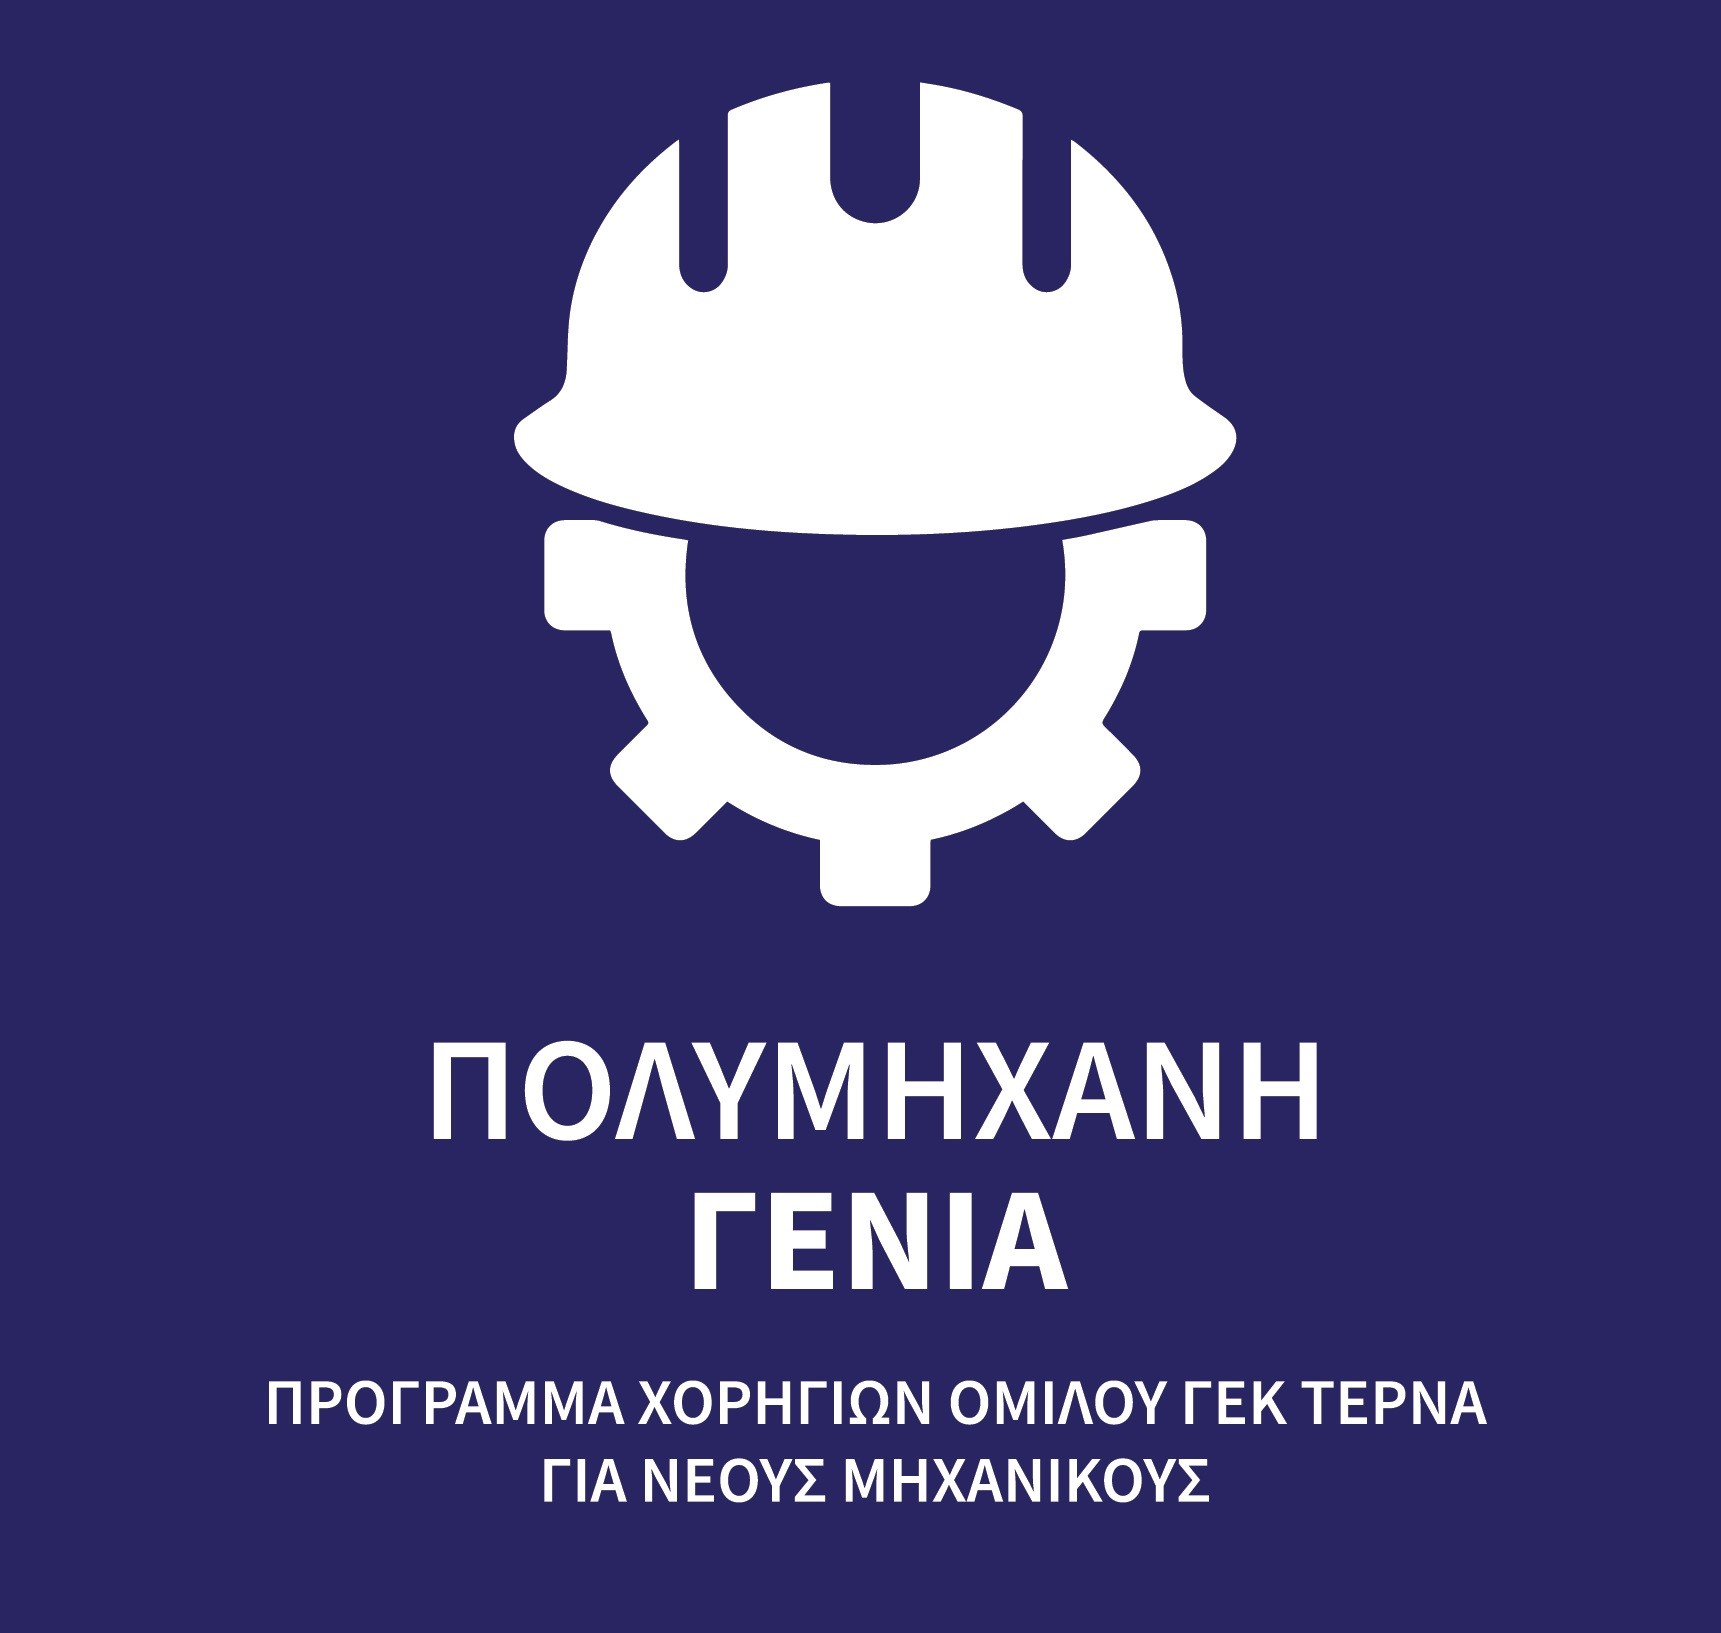 ΓΕΚ ΤΕΡΝΑ: Πρόγραμμα ανάπτυξης δεξιοτήτων νέων μηχανικών με τίτλο «Πολυμήχανη Γενιά»